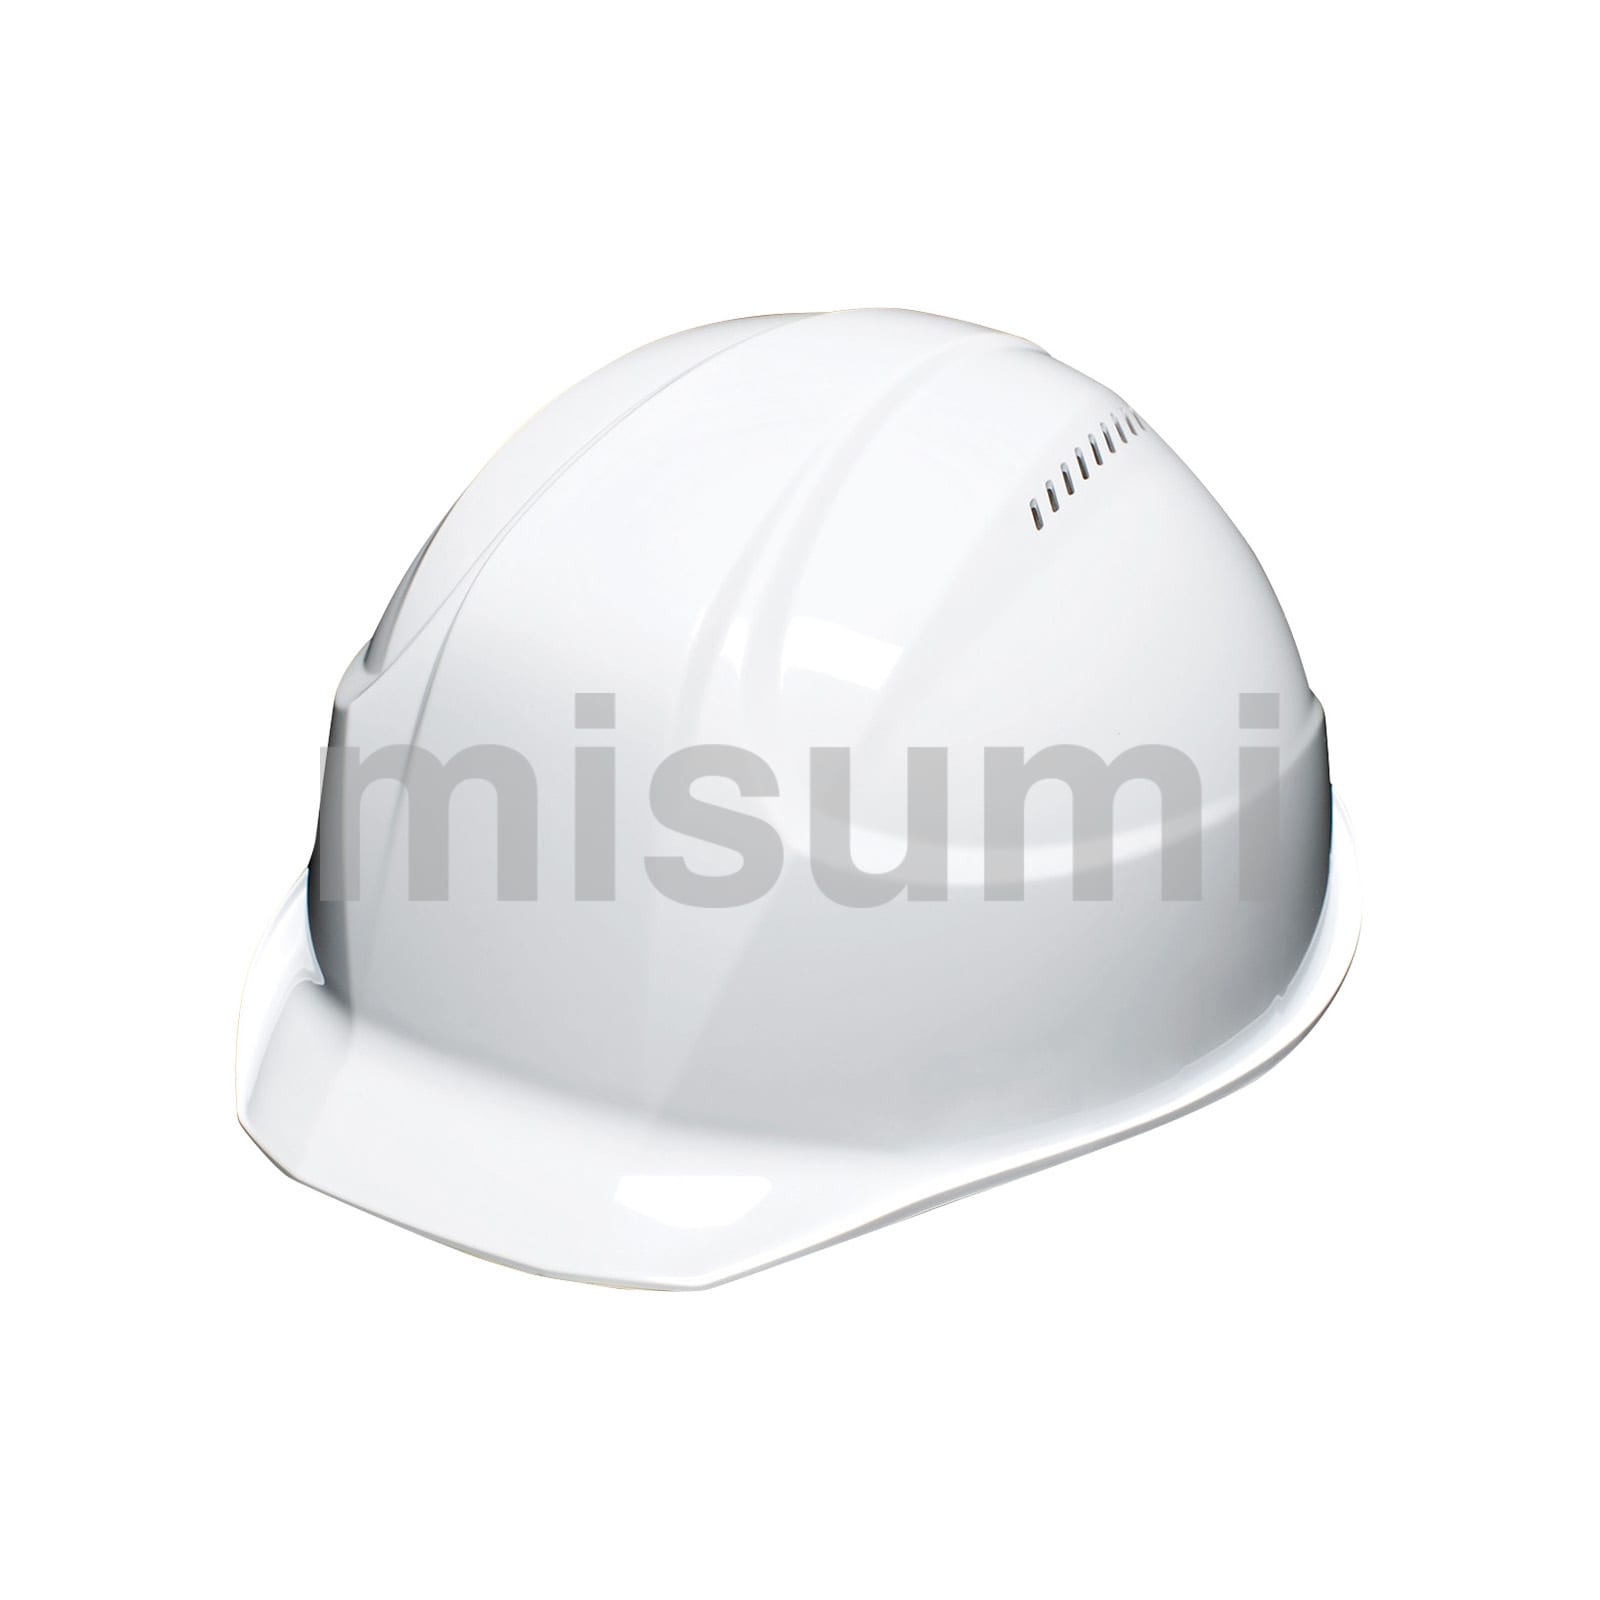 ヘルメット 透明バイザータイプ・シールド面付 161V・162V 谷沢製作所 MISUMI(ミスミ)